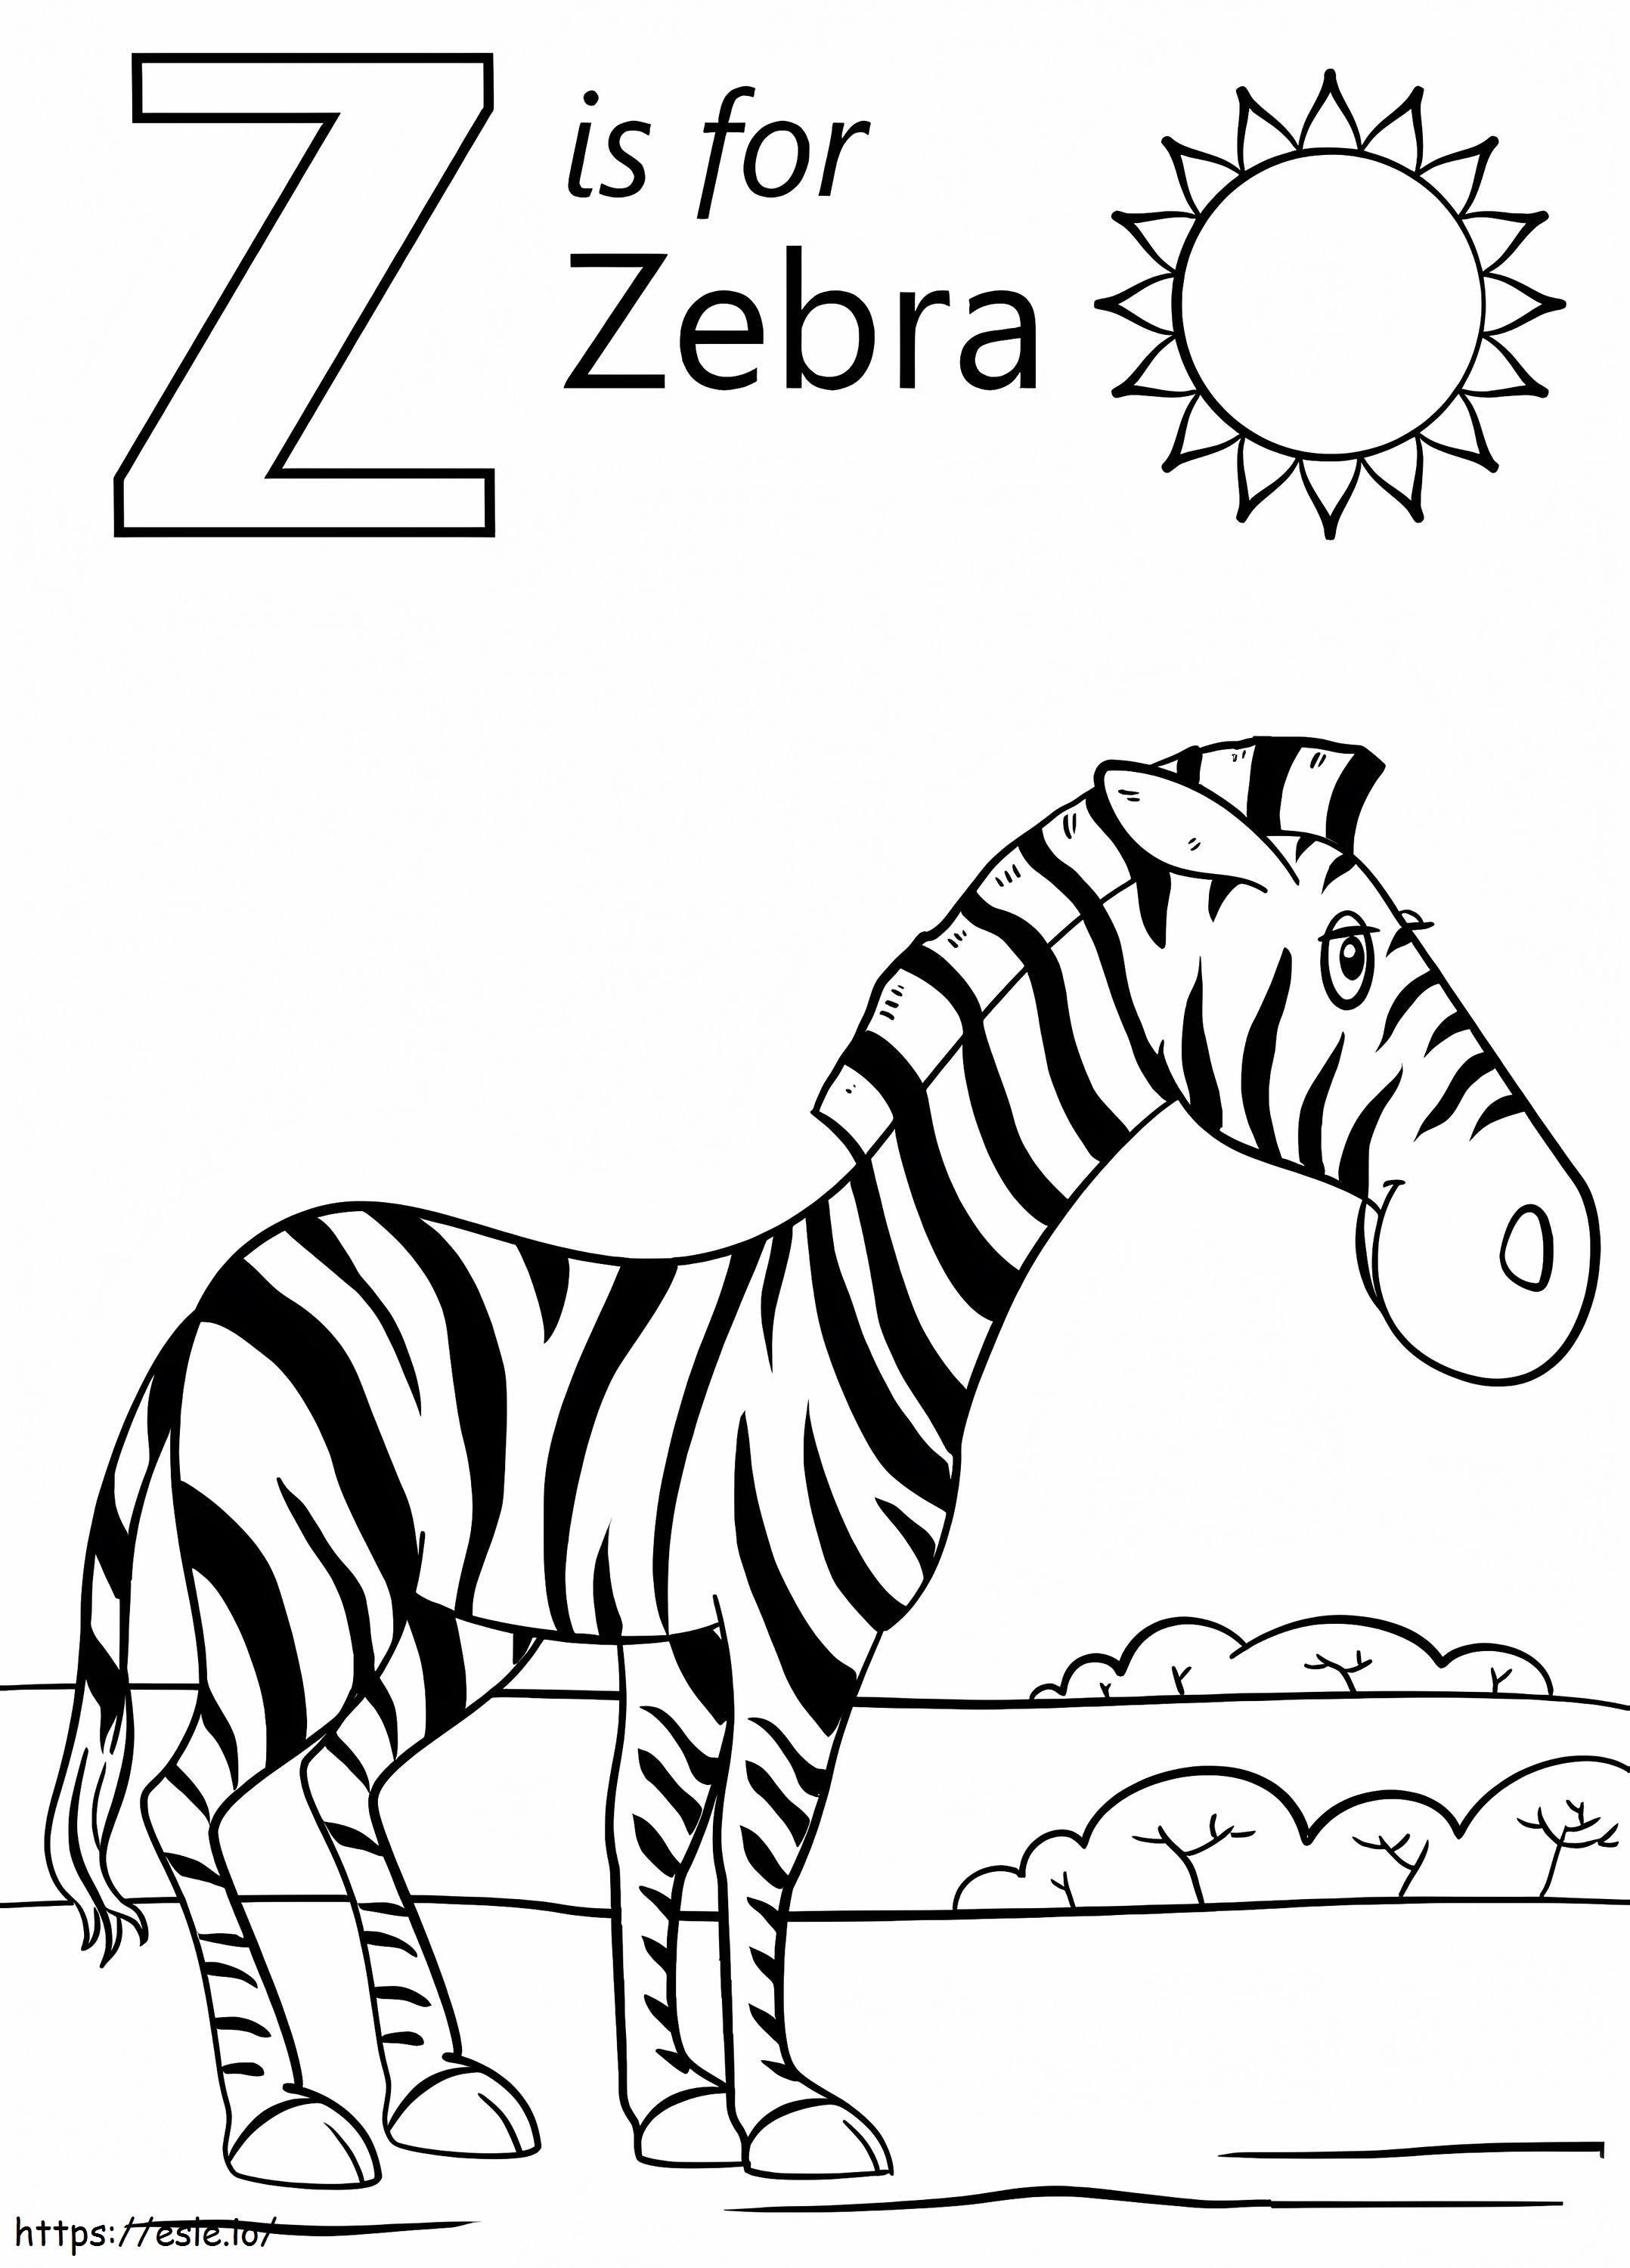 Zebra Lettera Z da colorare